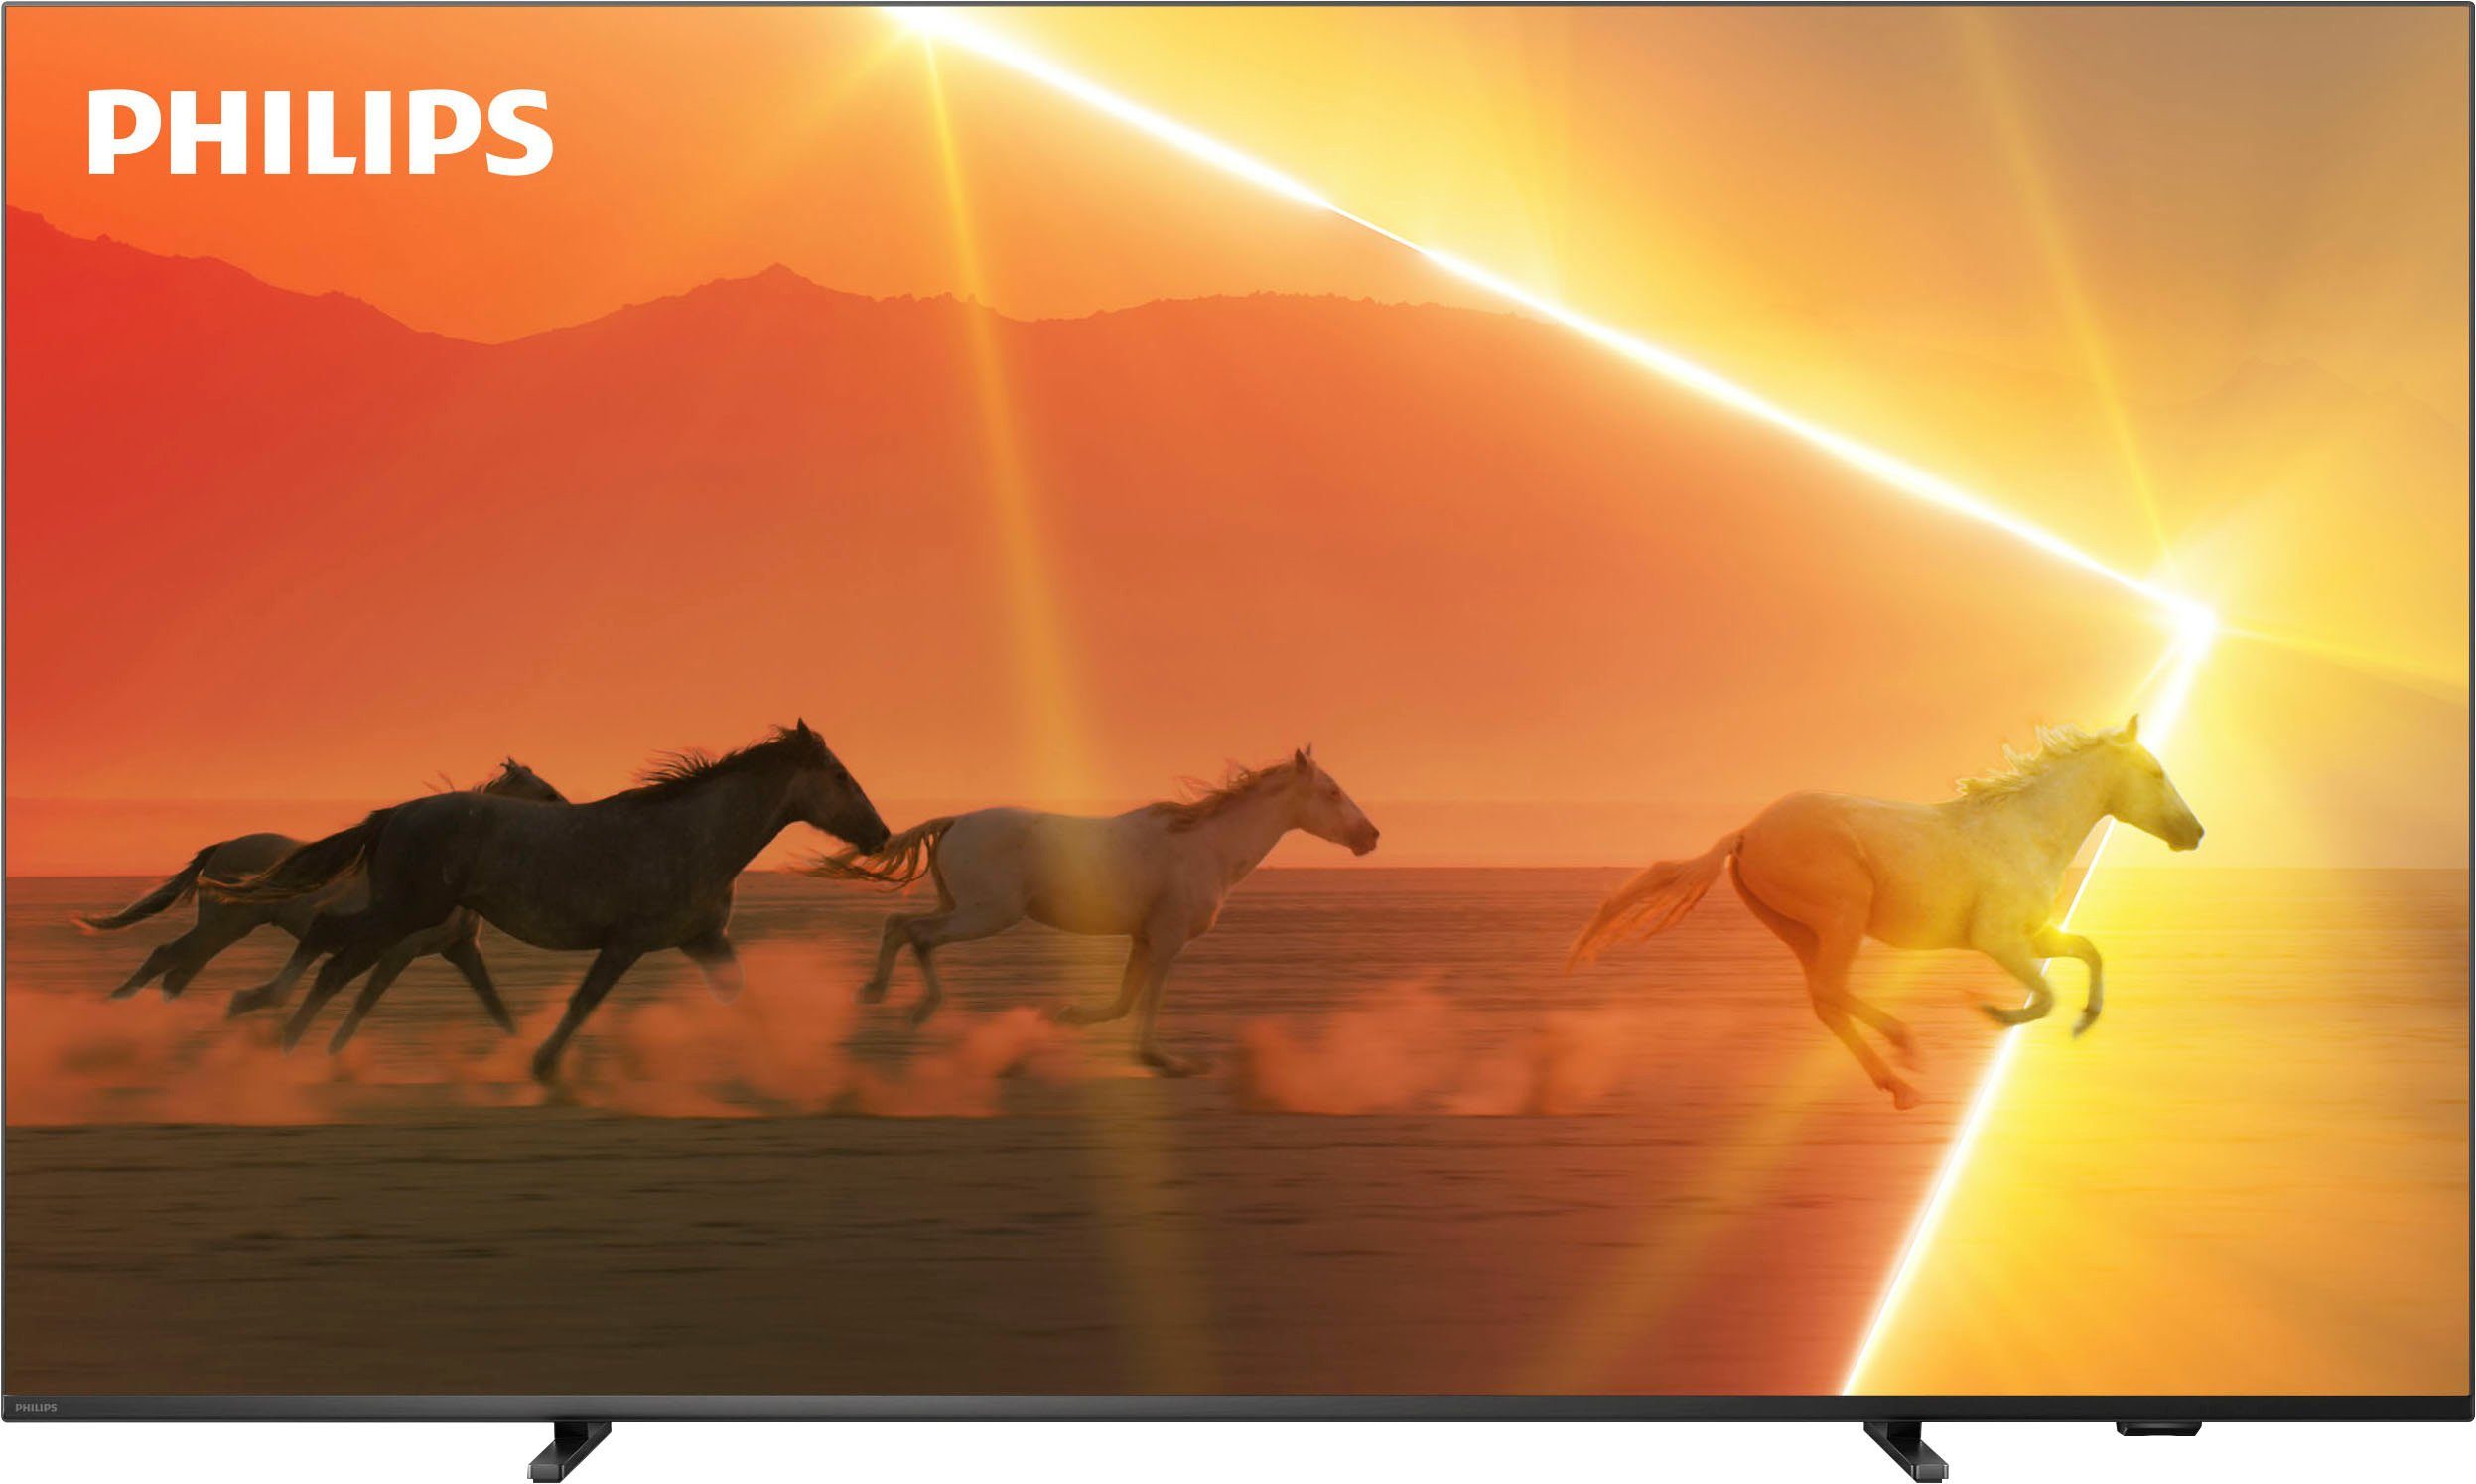 TV Mini LED Ambilight 65 (165,1 cm) Philips 65PML9008/12, 4K UHD, Smart TV